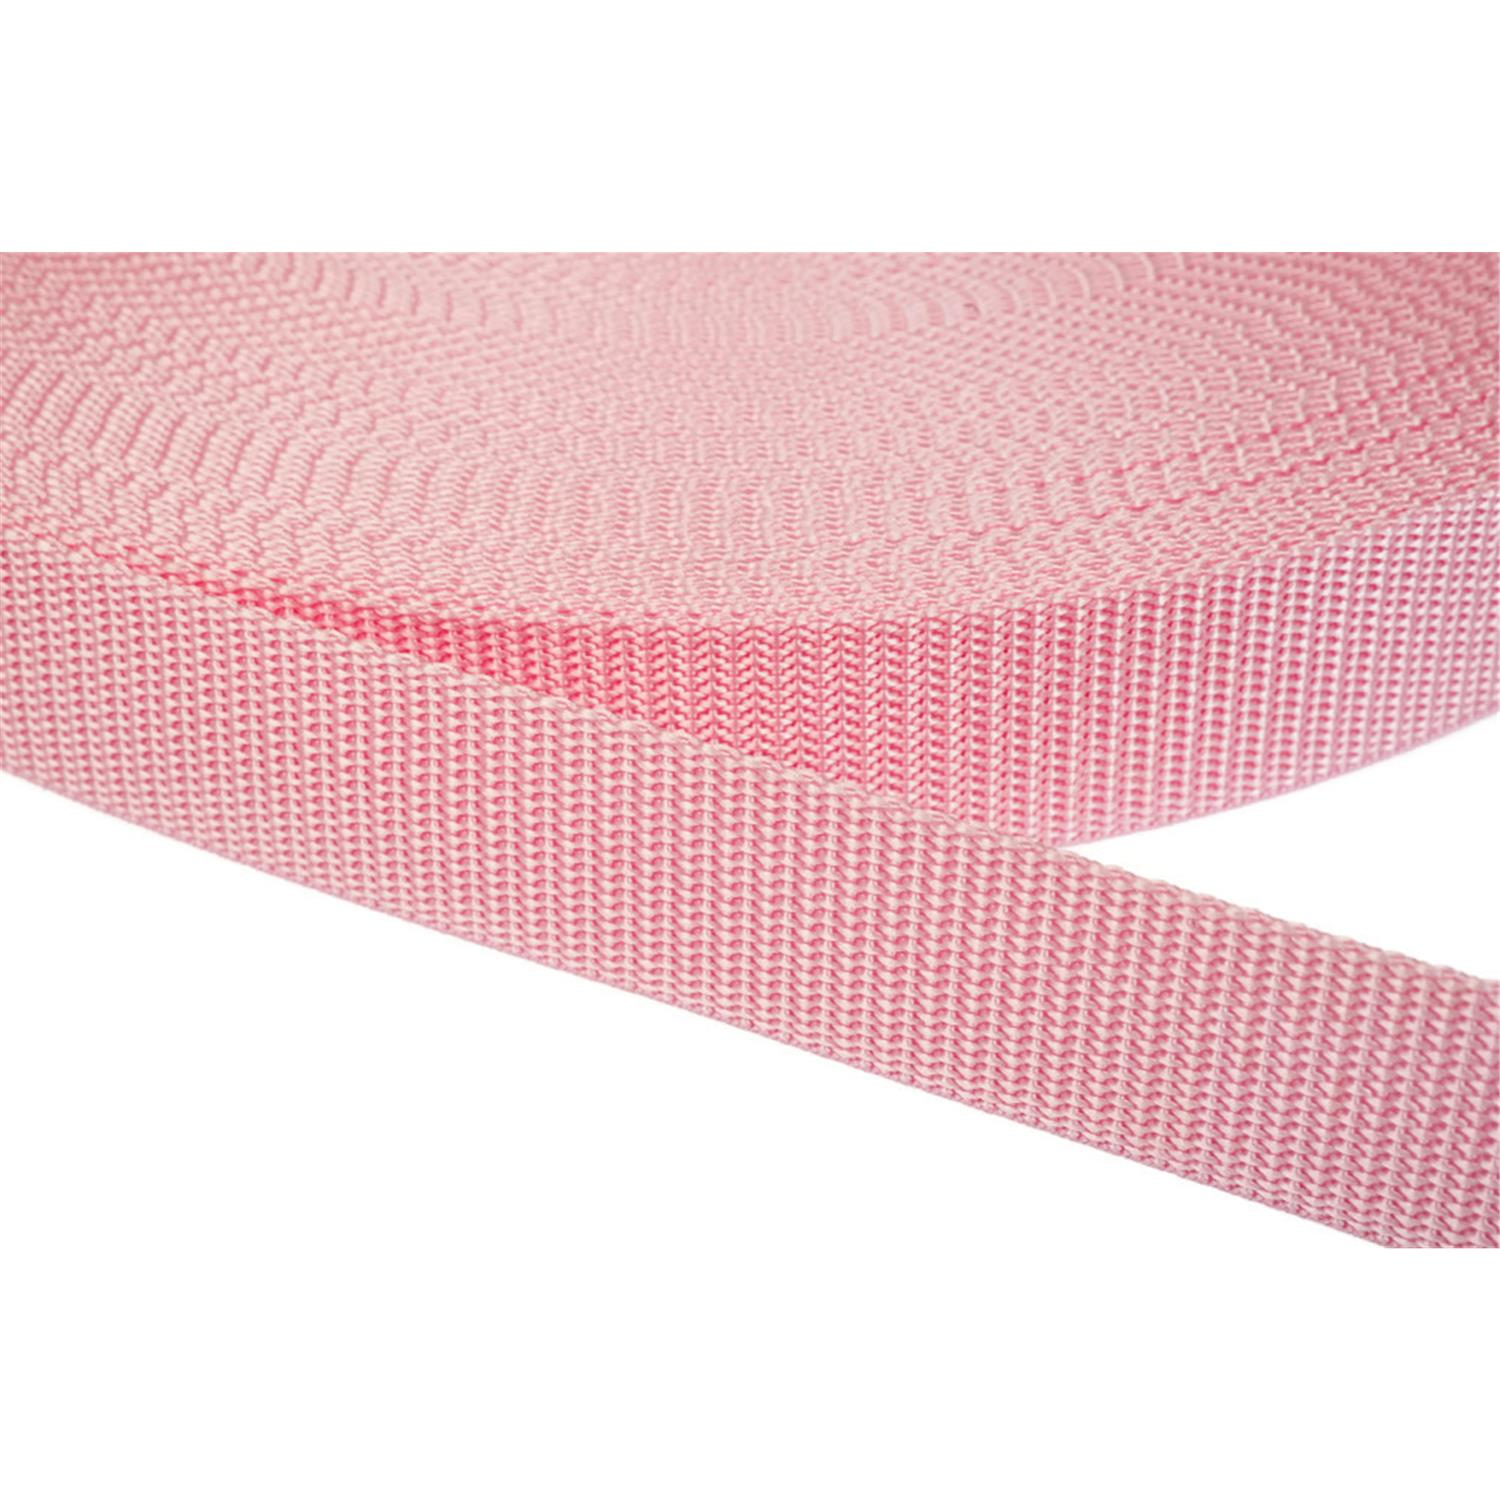 Gurtband 50mm breit aus Polypropylen in 41 Farben 12 - rosa 12 Meter